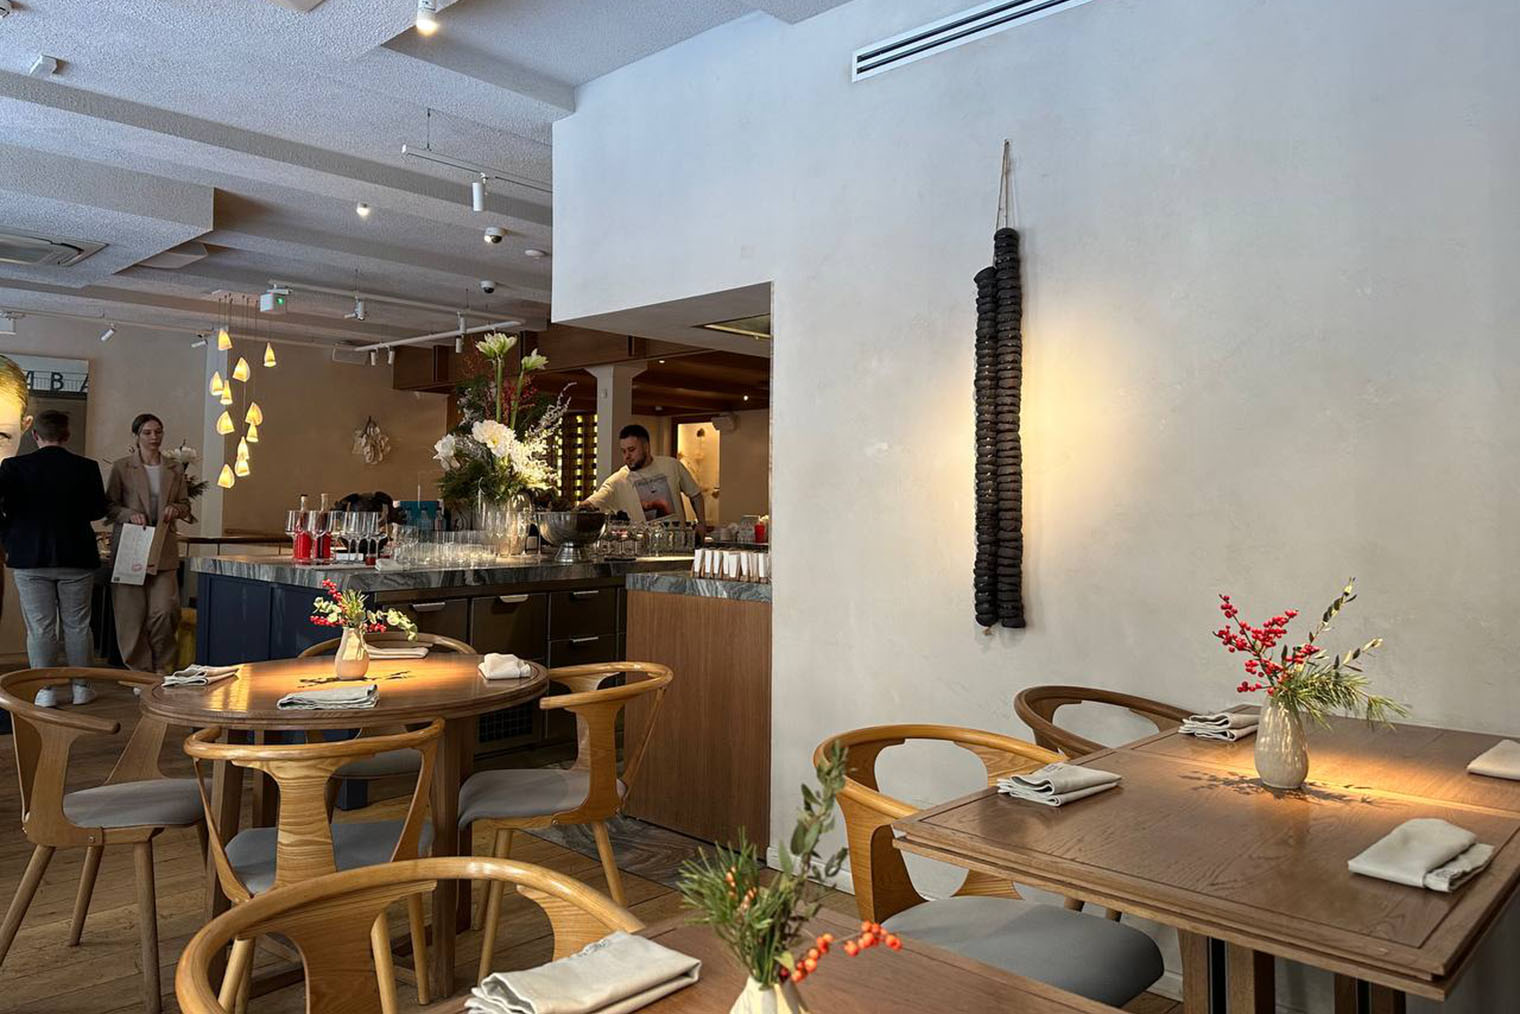 Интерьер ресторана приятный, особенно порадовали картины на стенах и живые растения на столах